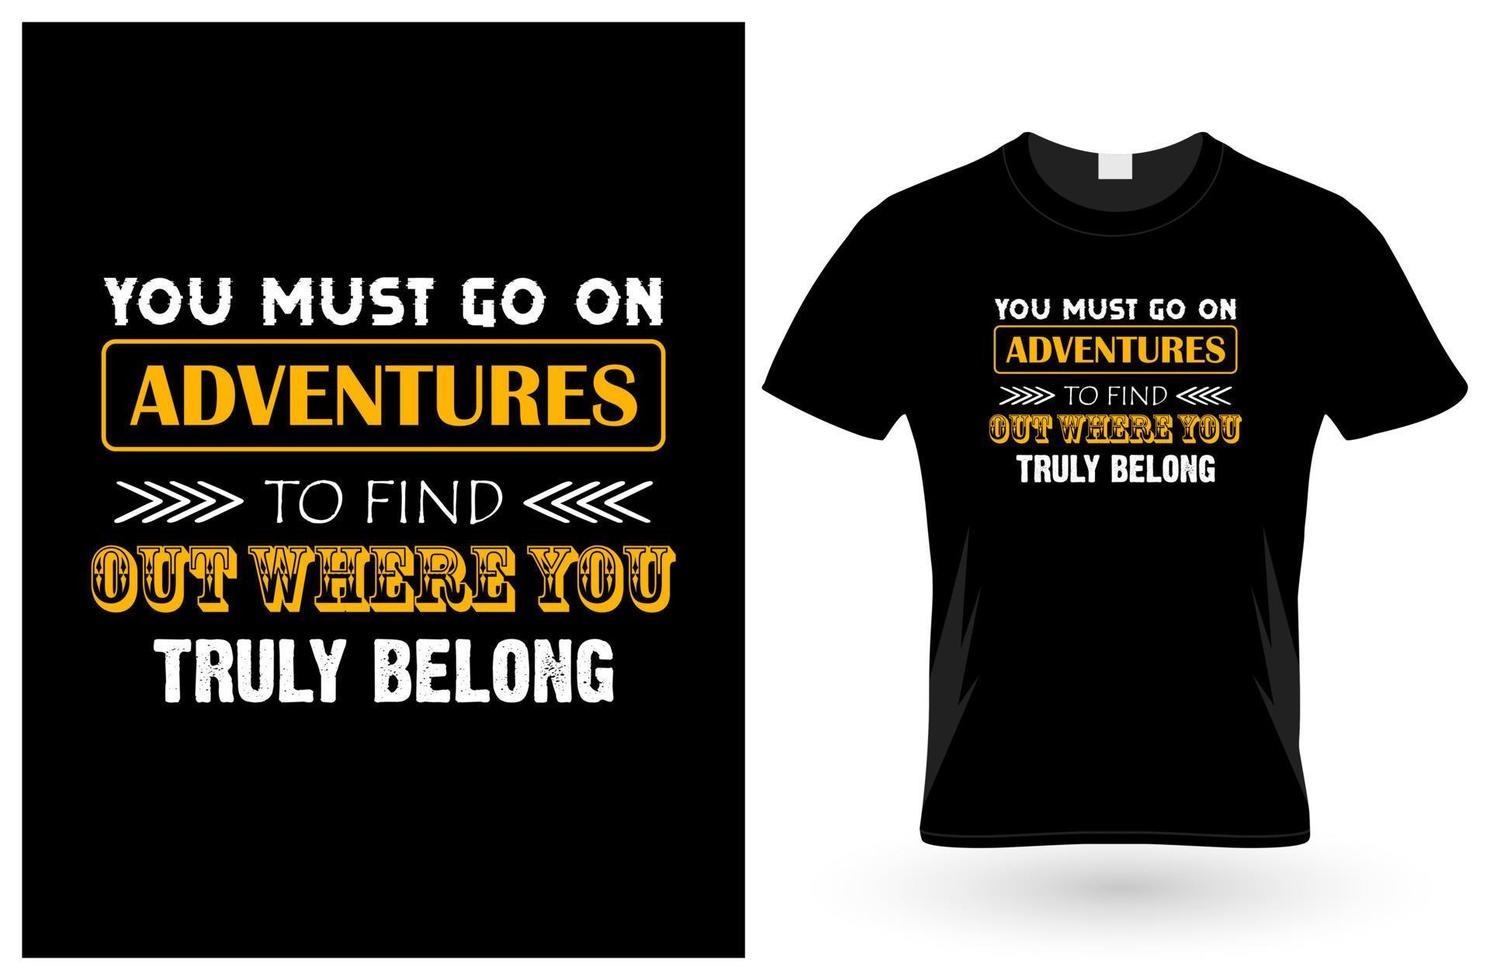 je moet op avontuur gaan om erachter te komen waar je echt thuishoort t-shirt vector